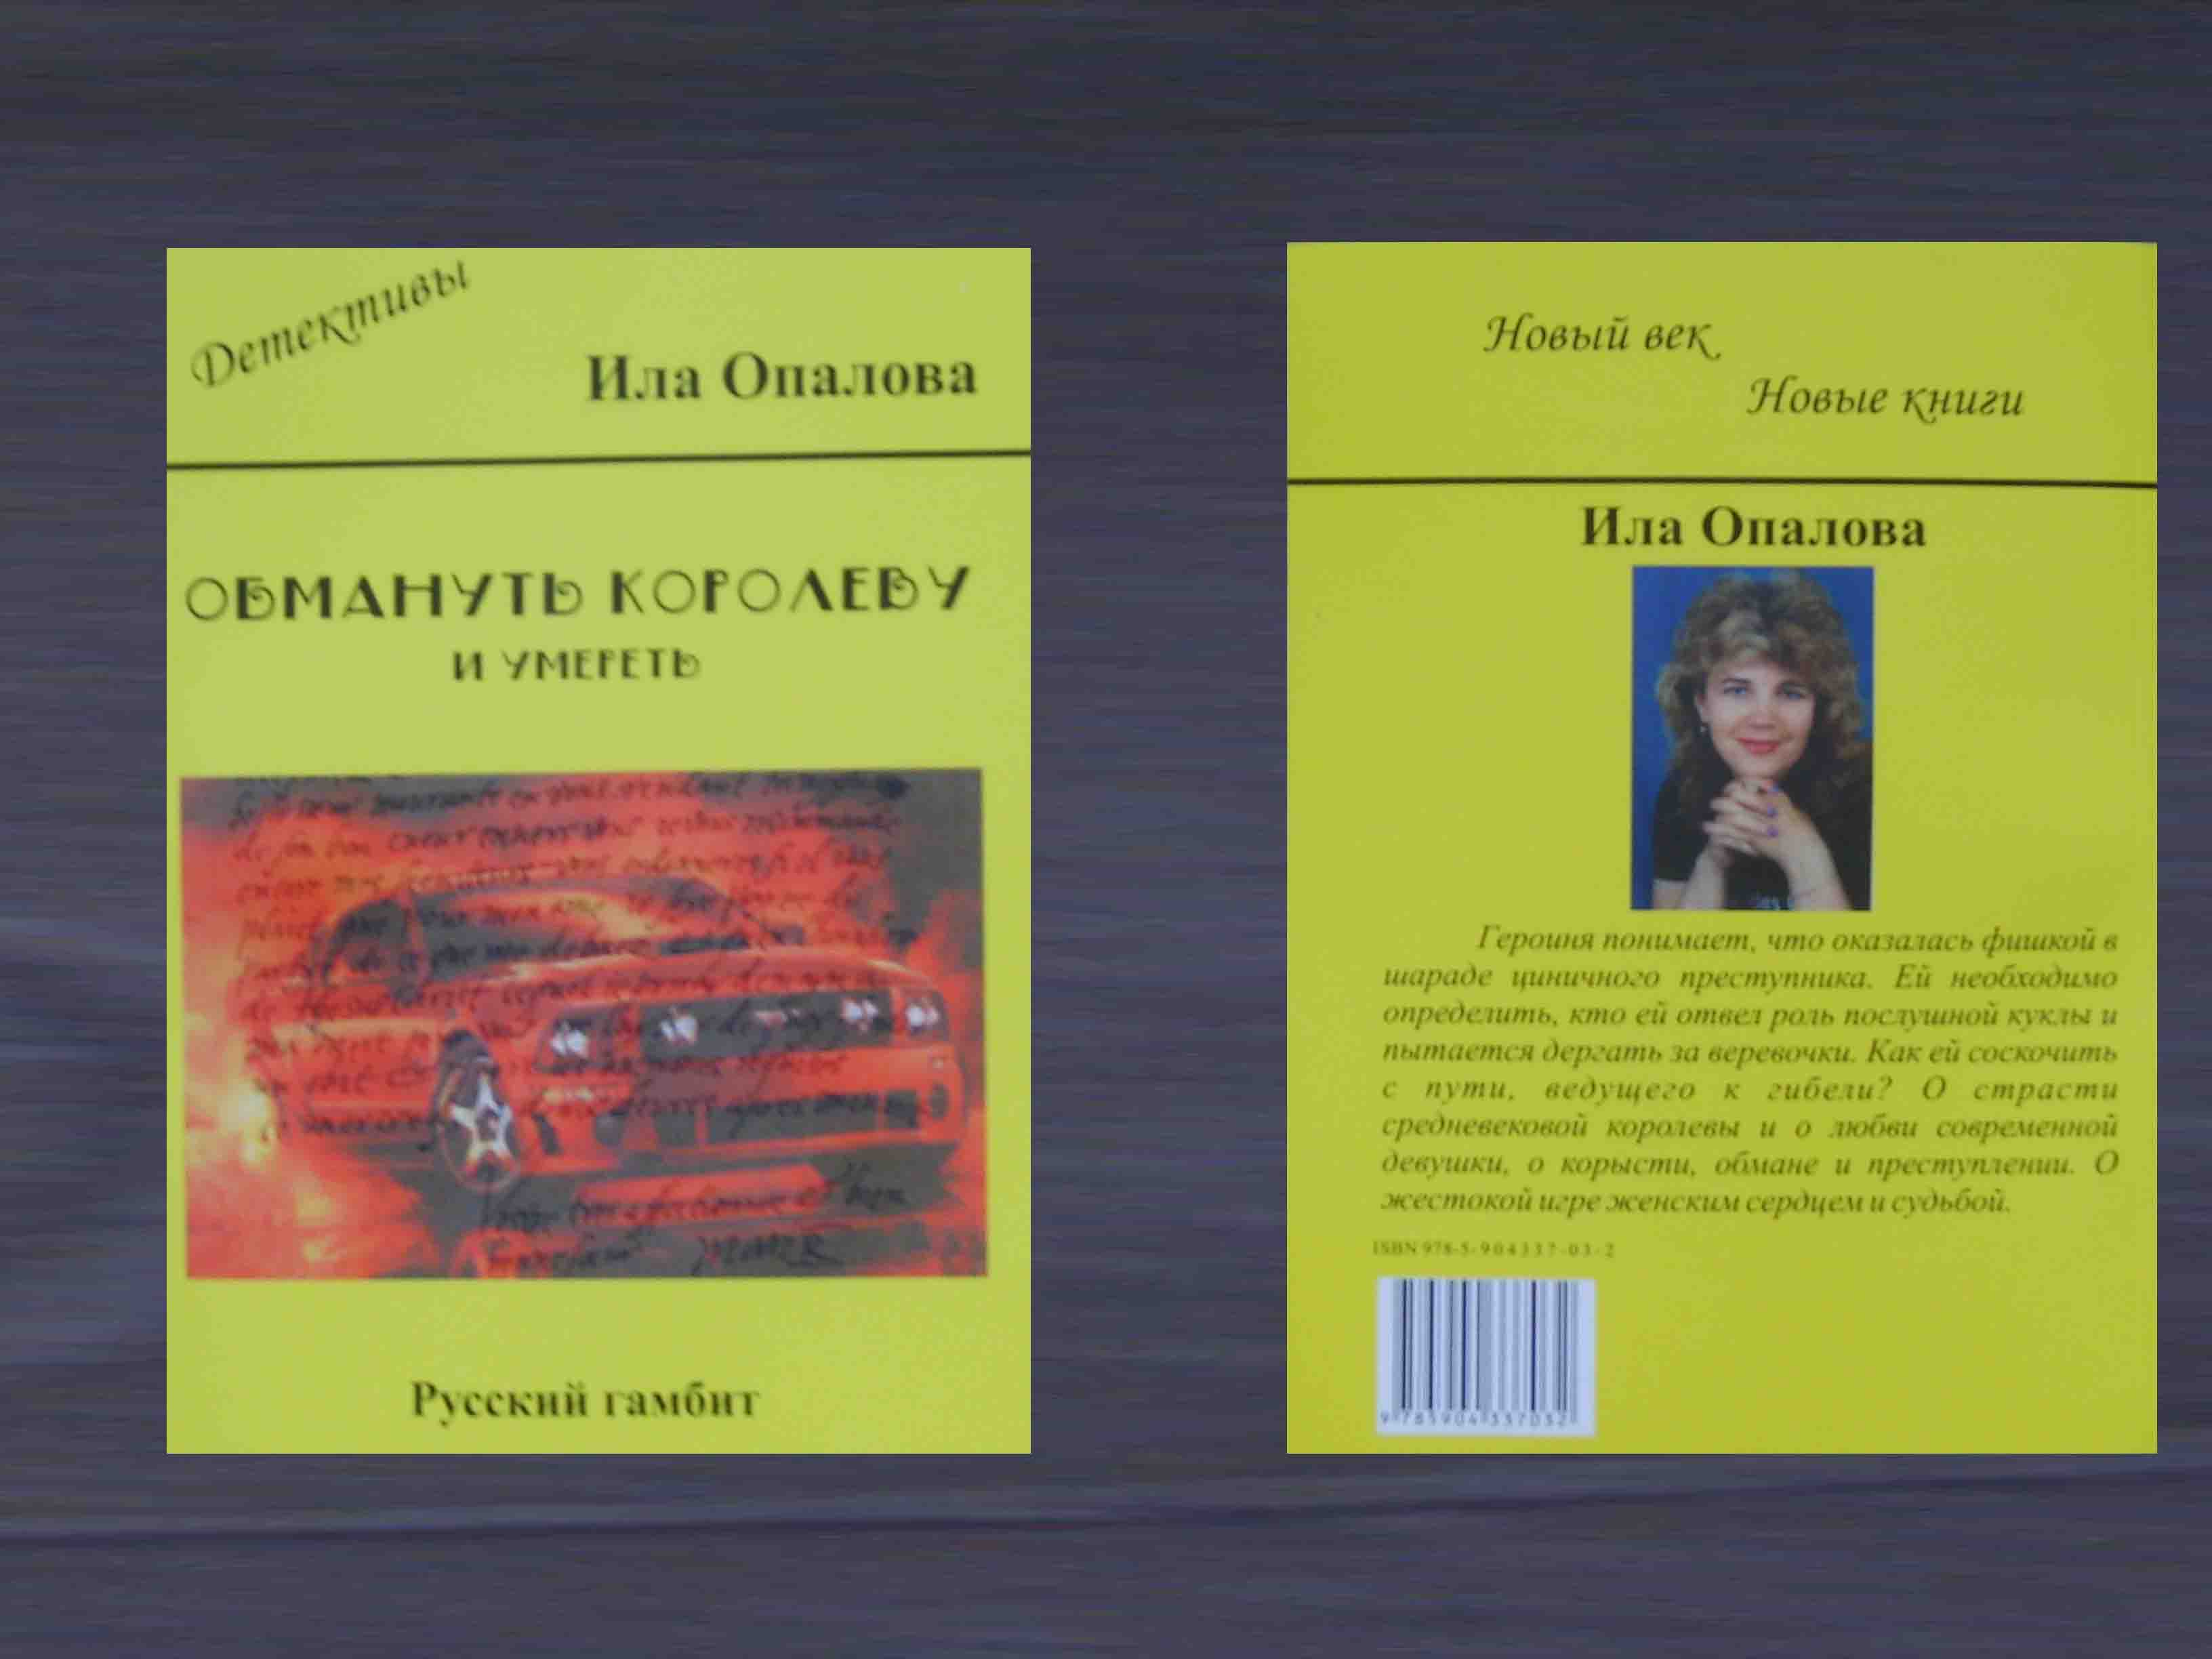 напечатанная книга издательством "Русский гамбит"